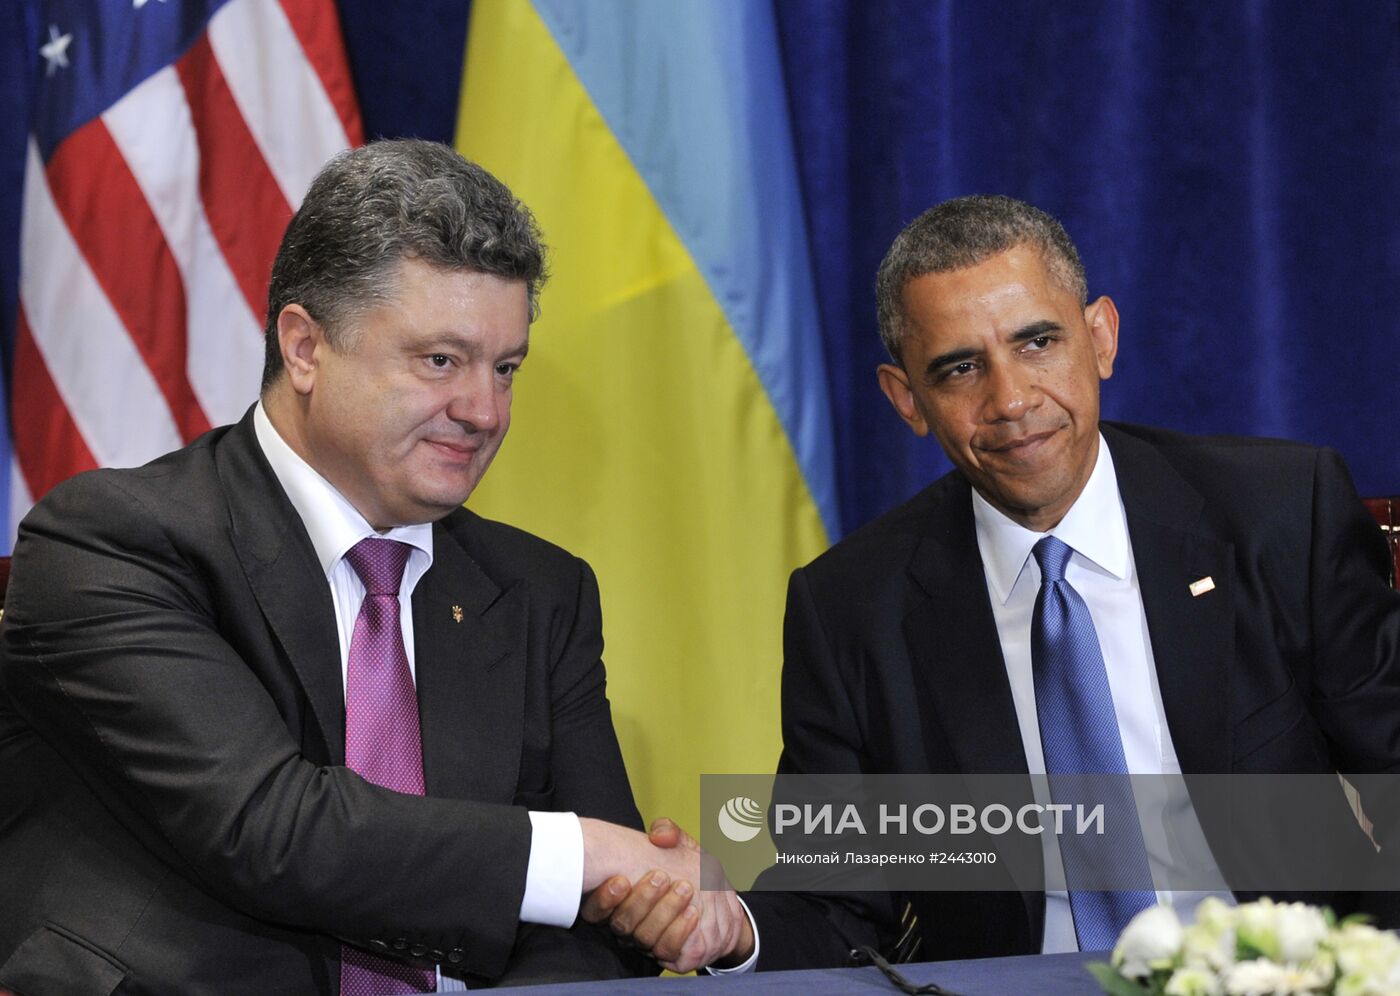 Б.Обама встретился с П.Порошенко